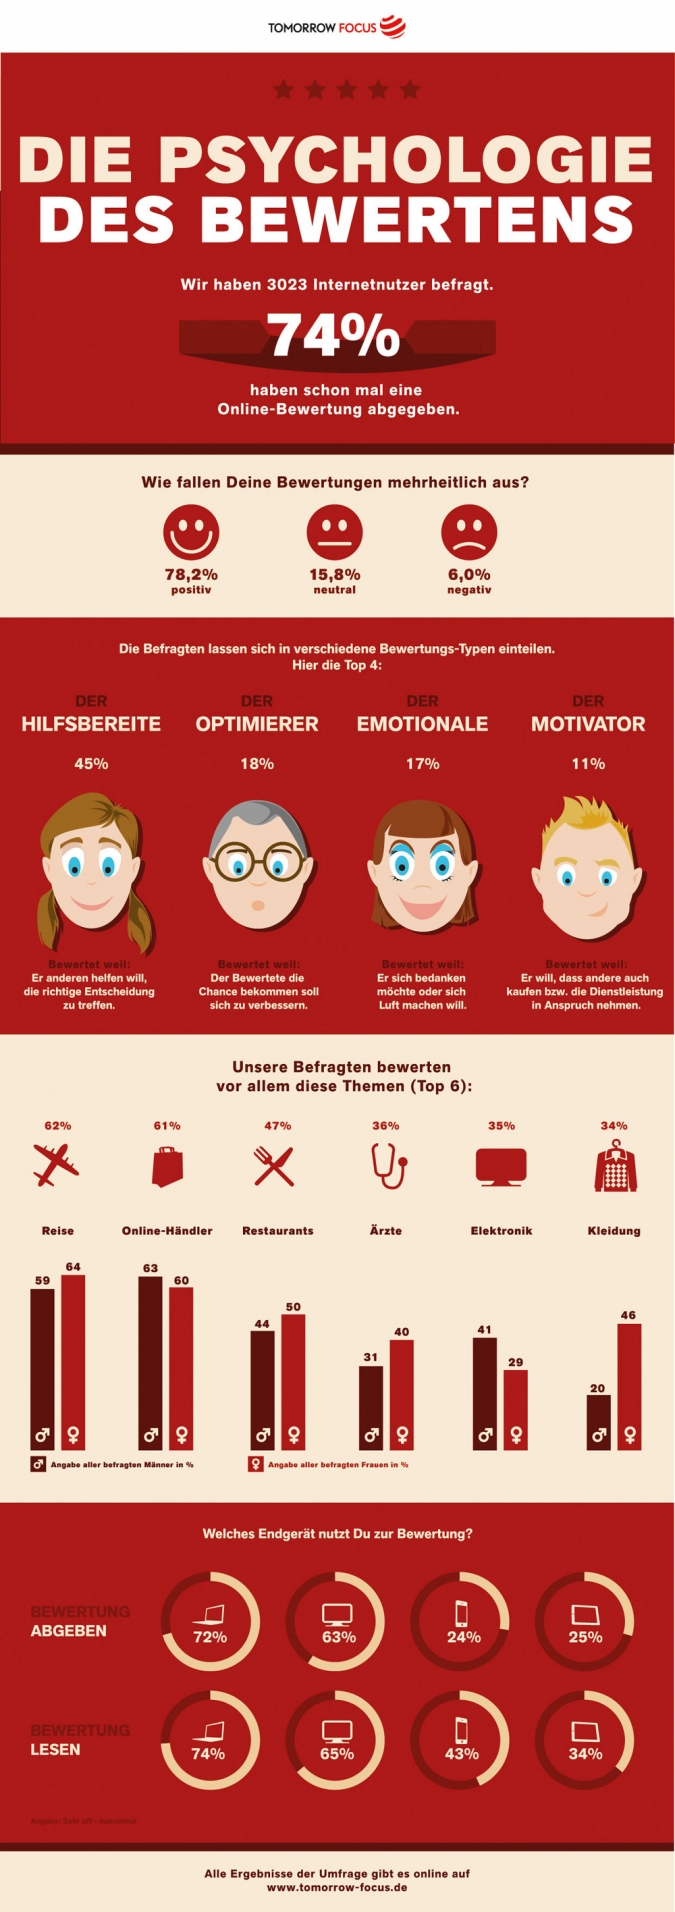 Word-of-Mouth-Marketing – Die Psychologie der Kundenbewertungen in Social Media [Infografik]